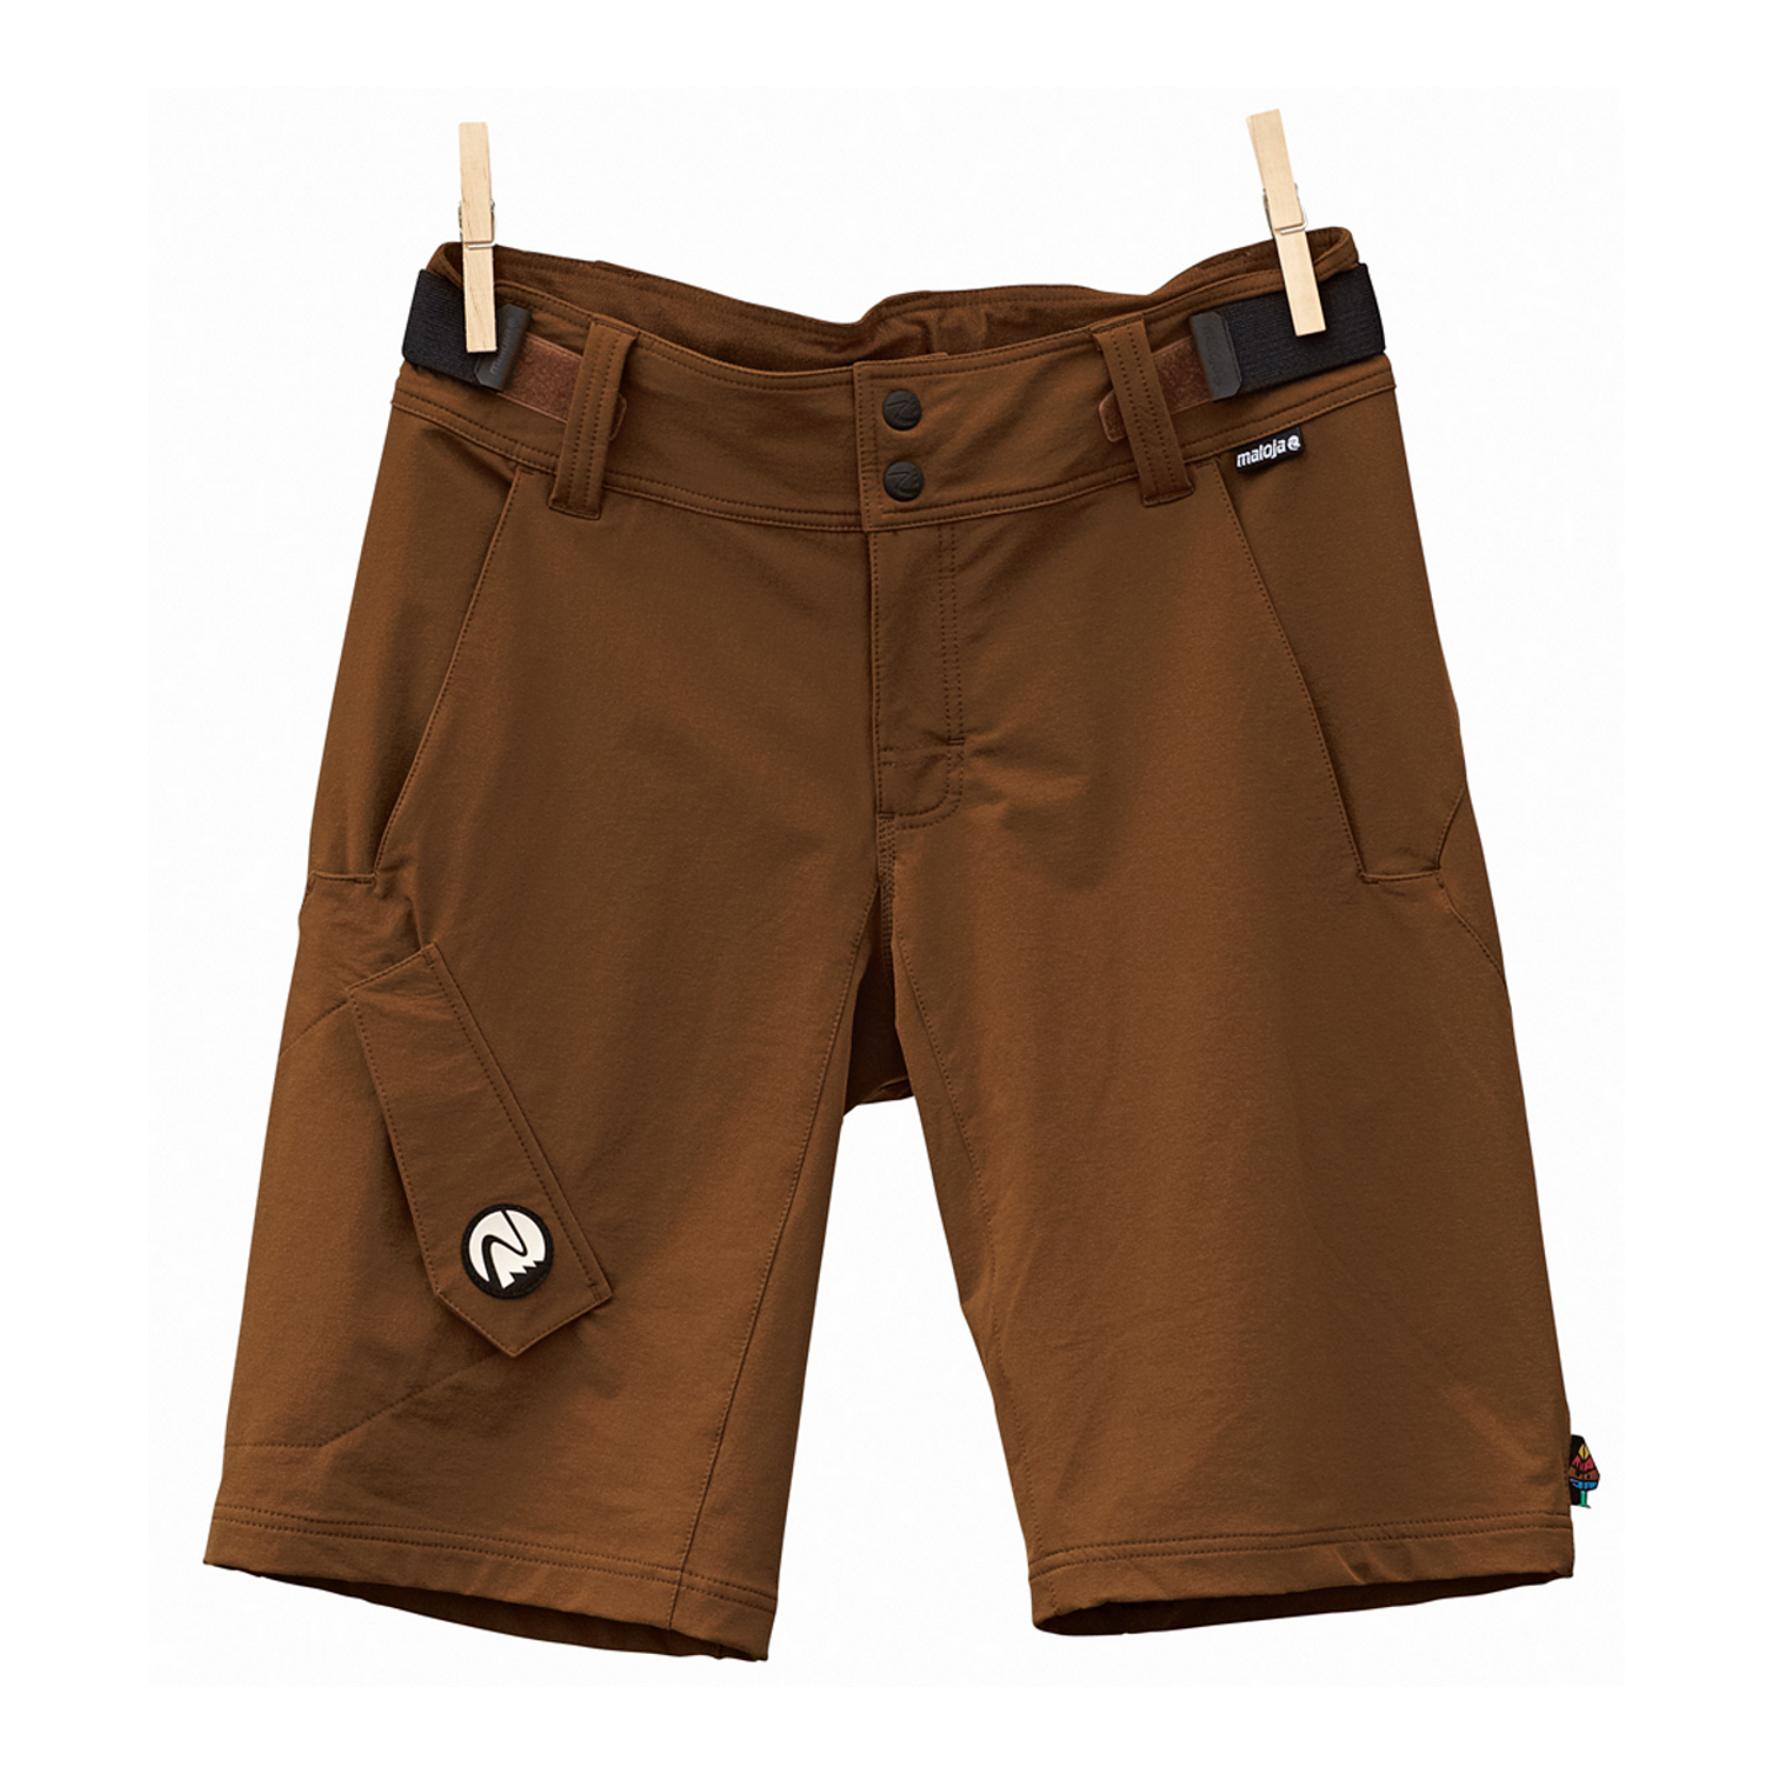 Foto Pantalones cortos Maloja YungaM. marrón para hombre , s